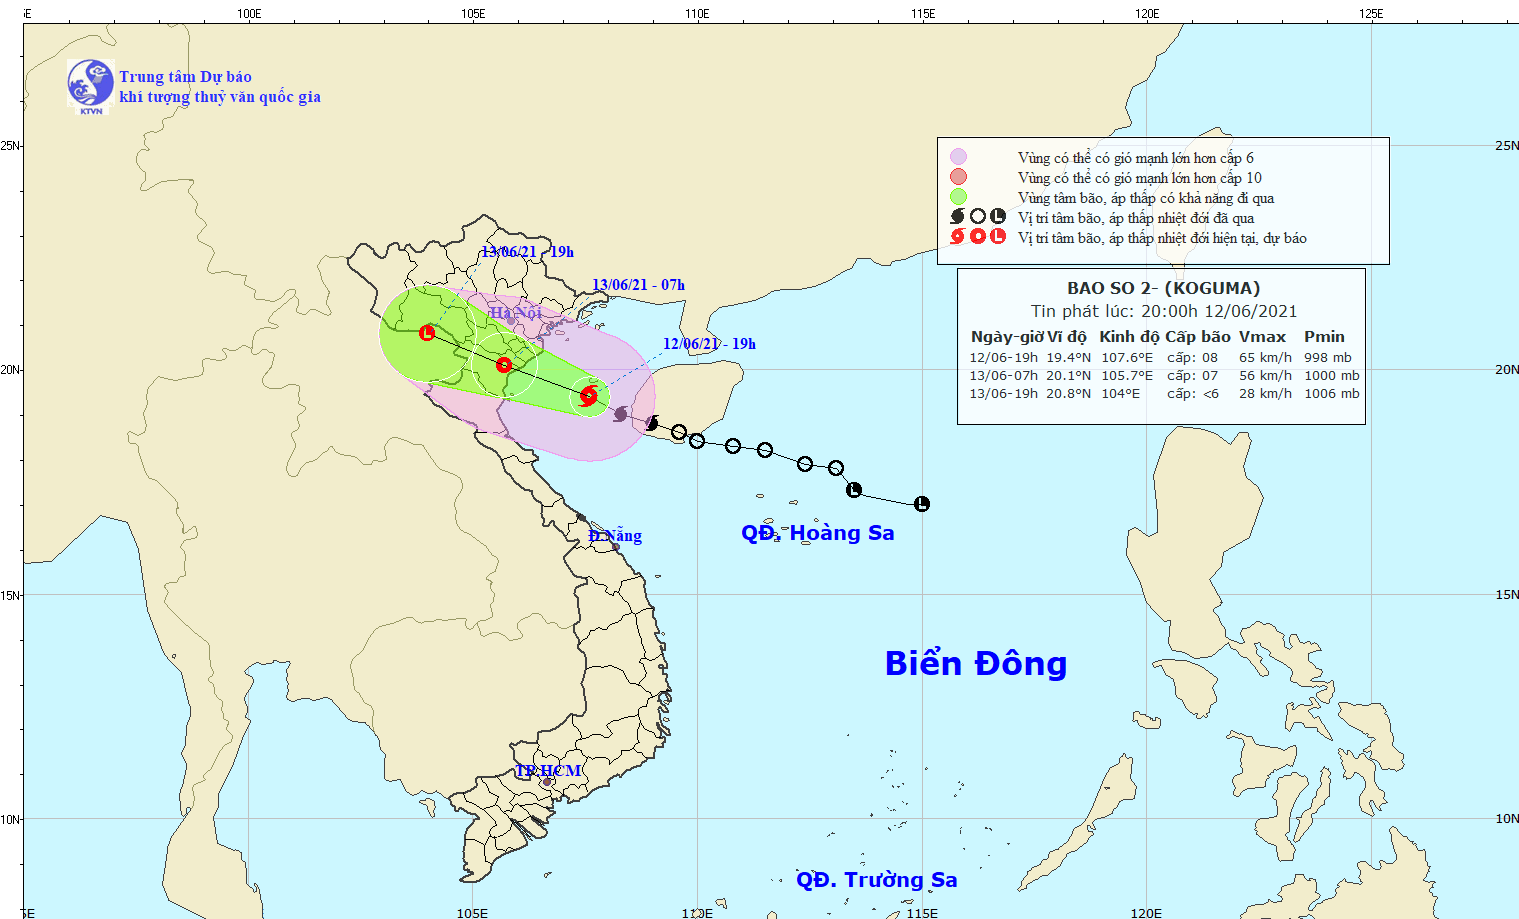 Bão số 2 cách đất liền từ Hải Phòng đến Nghệ An 210km, gió giật cấp 10